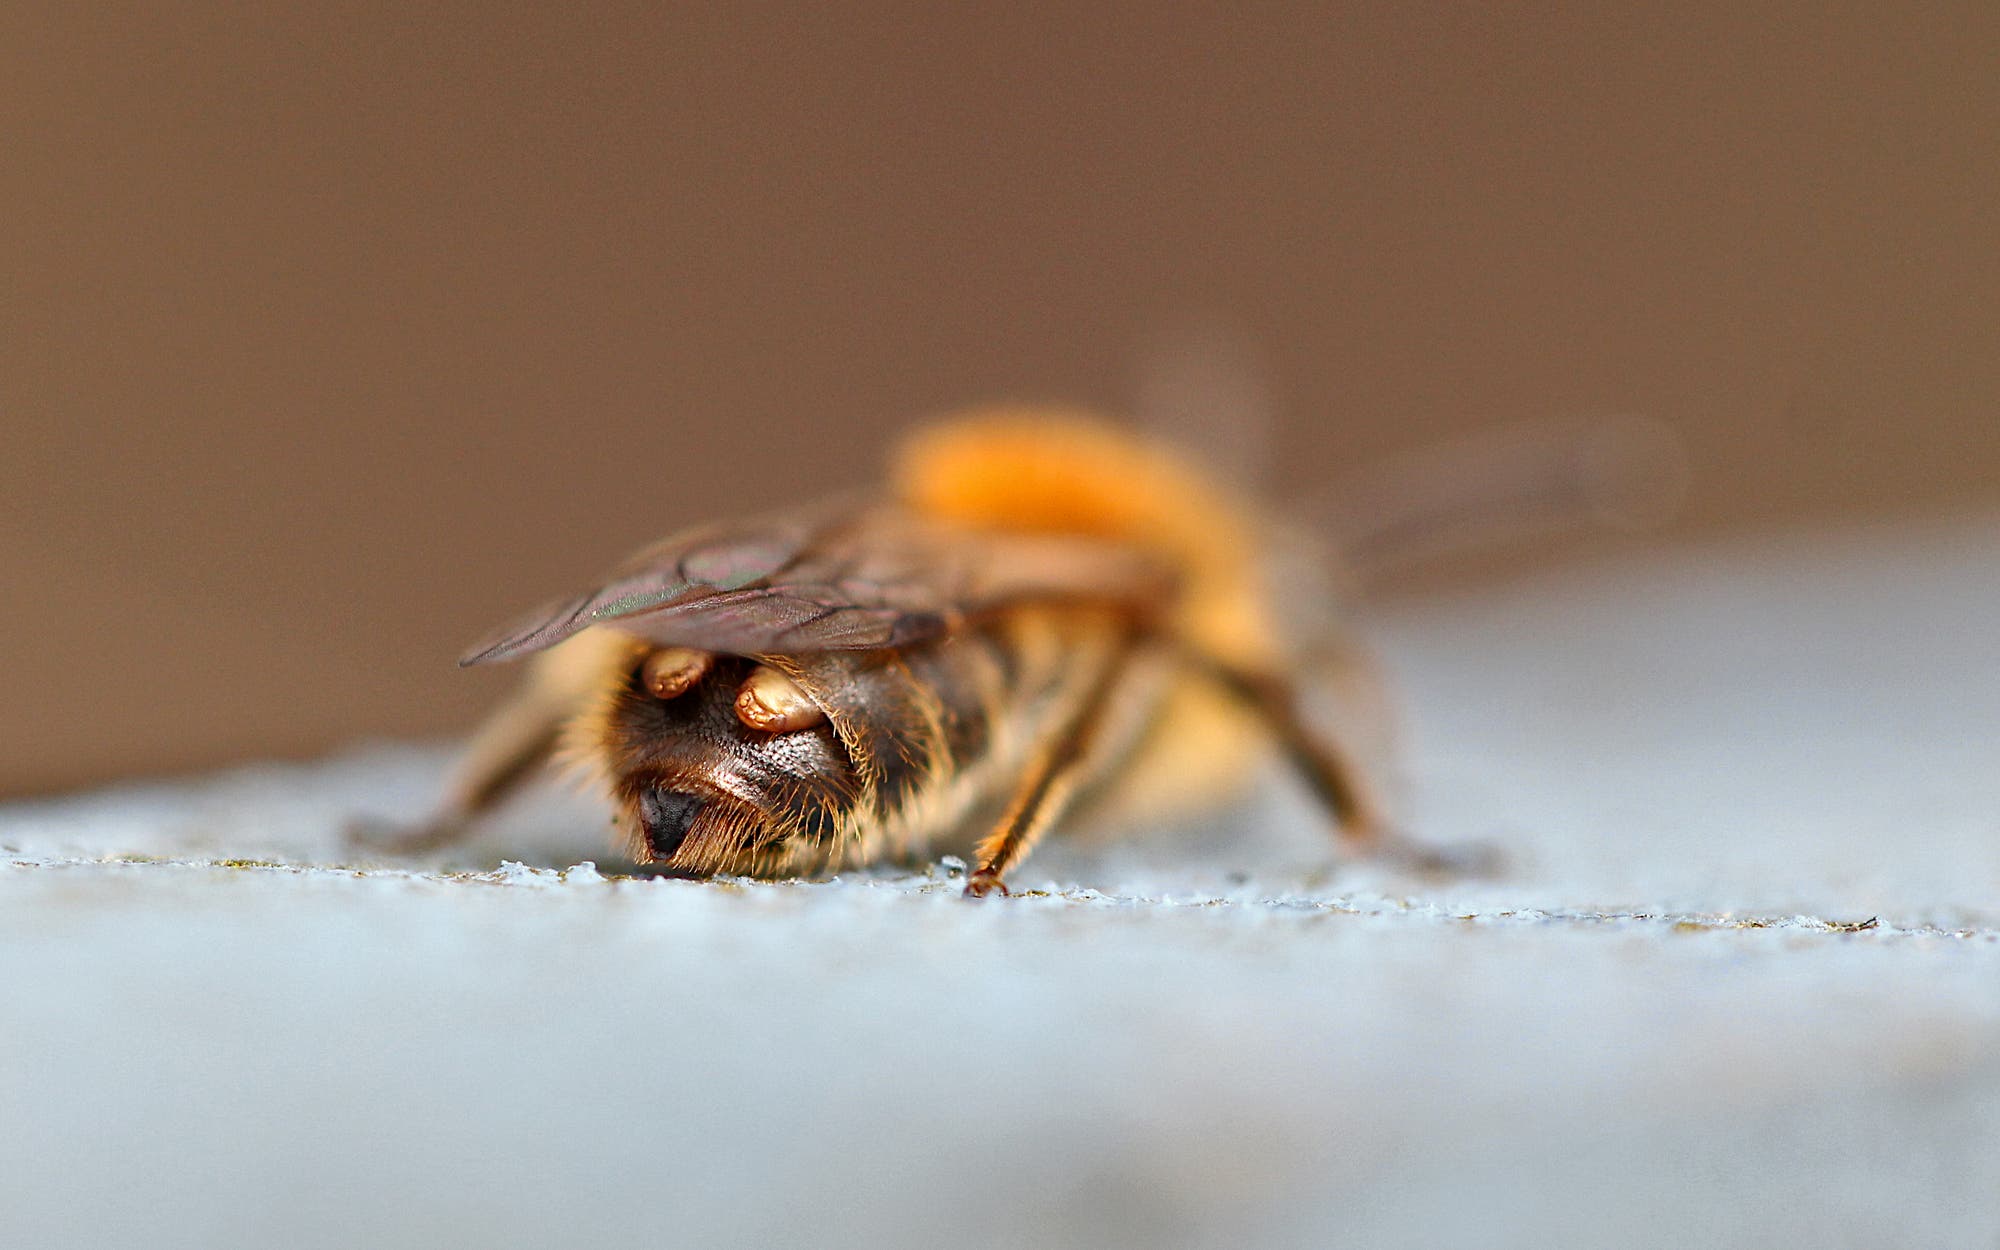 Diese Biene trägt zwei Parasiten, die braun gefärbt aus dem Hinterleib ragen.